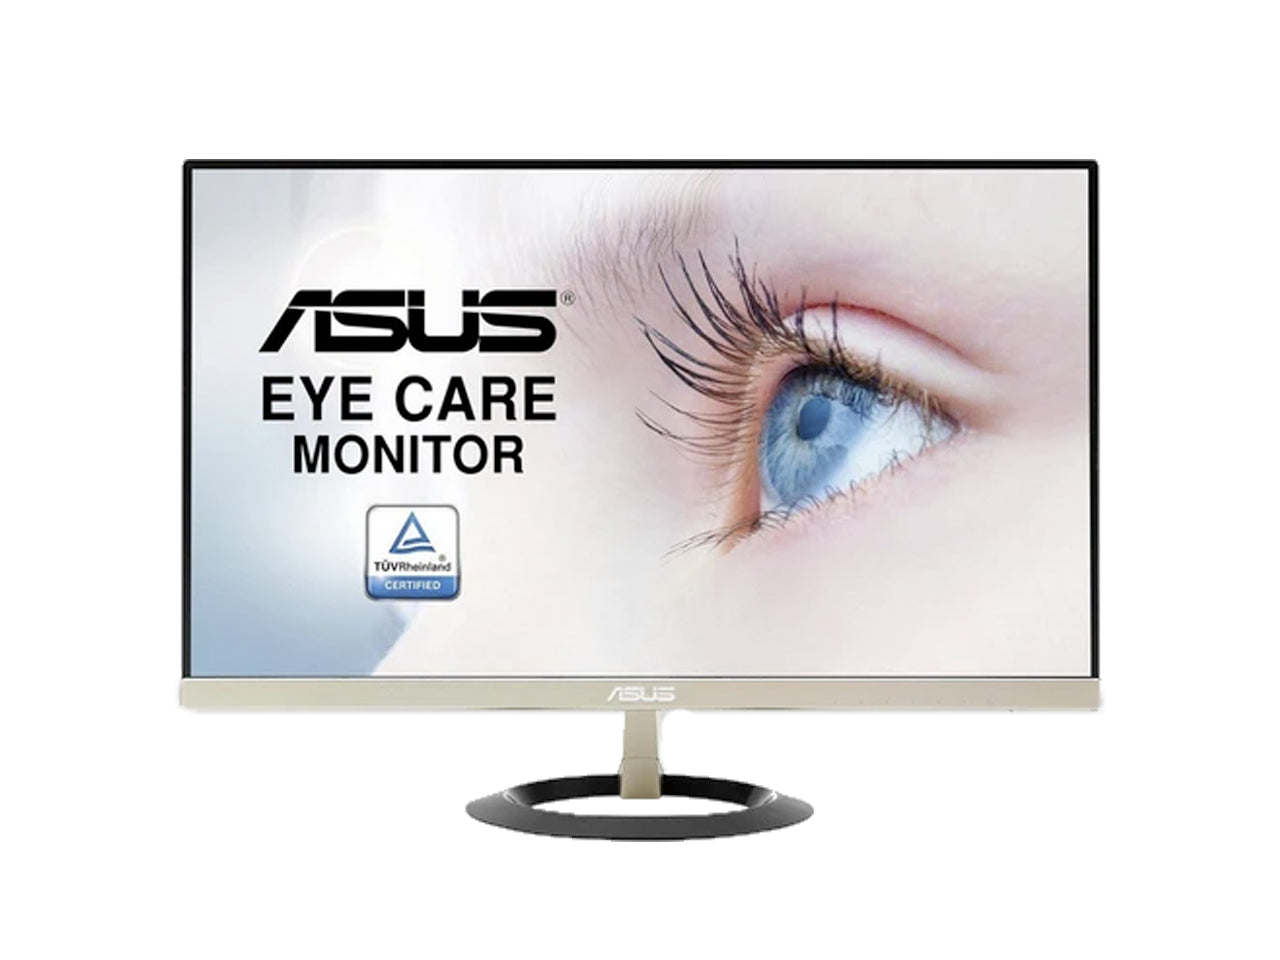 Asus VZ229H 21.5-inch LED Monitor